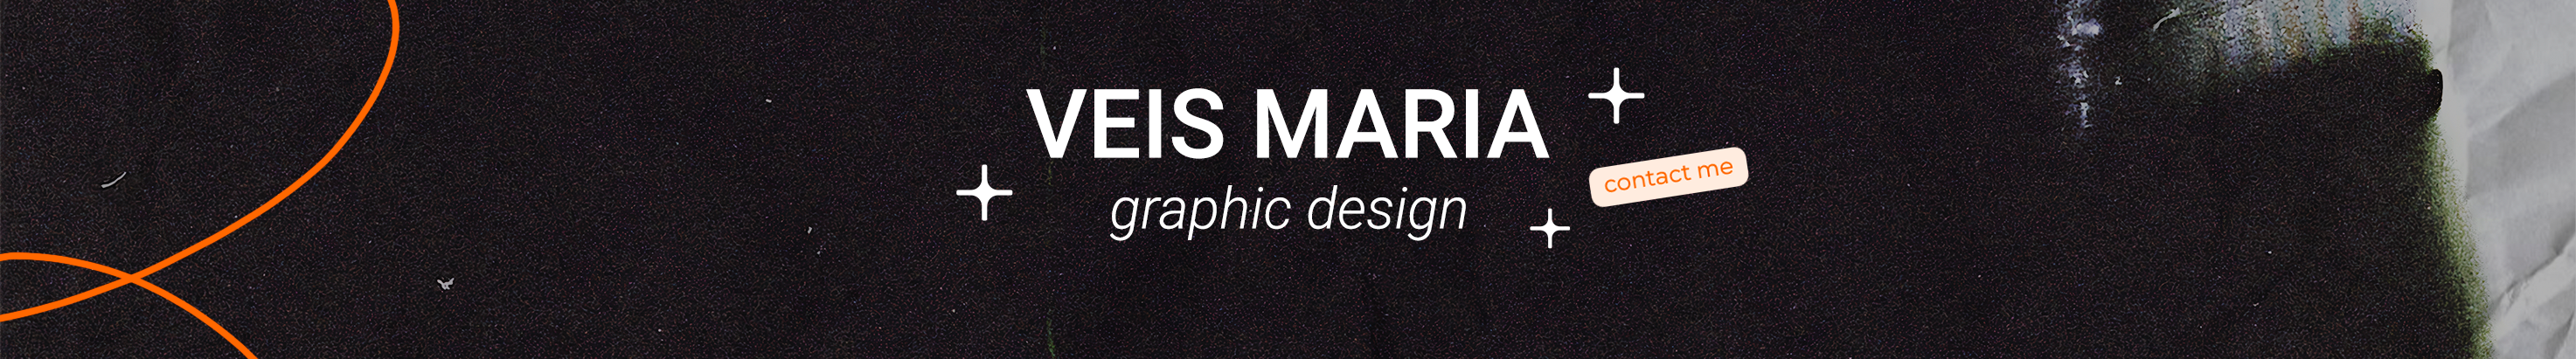 Banner de perfil de Maria Veis